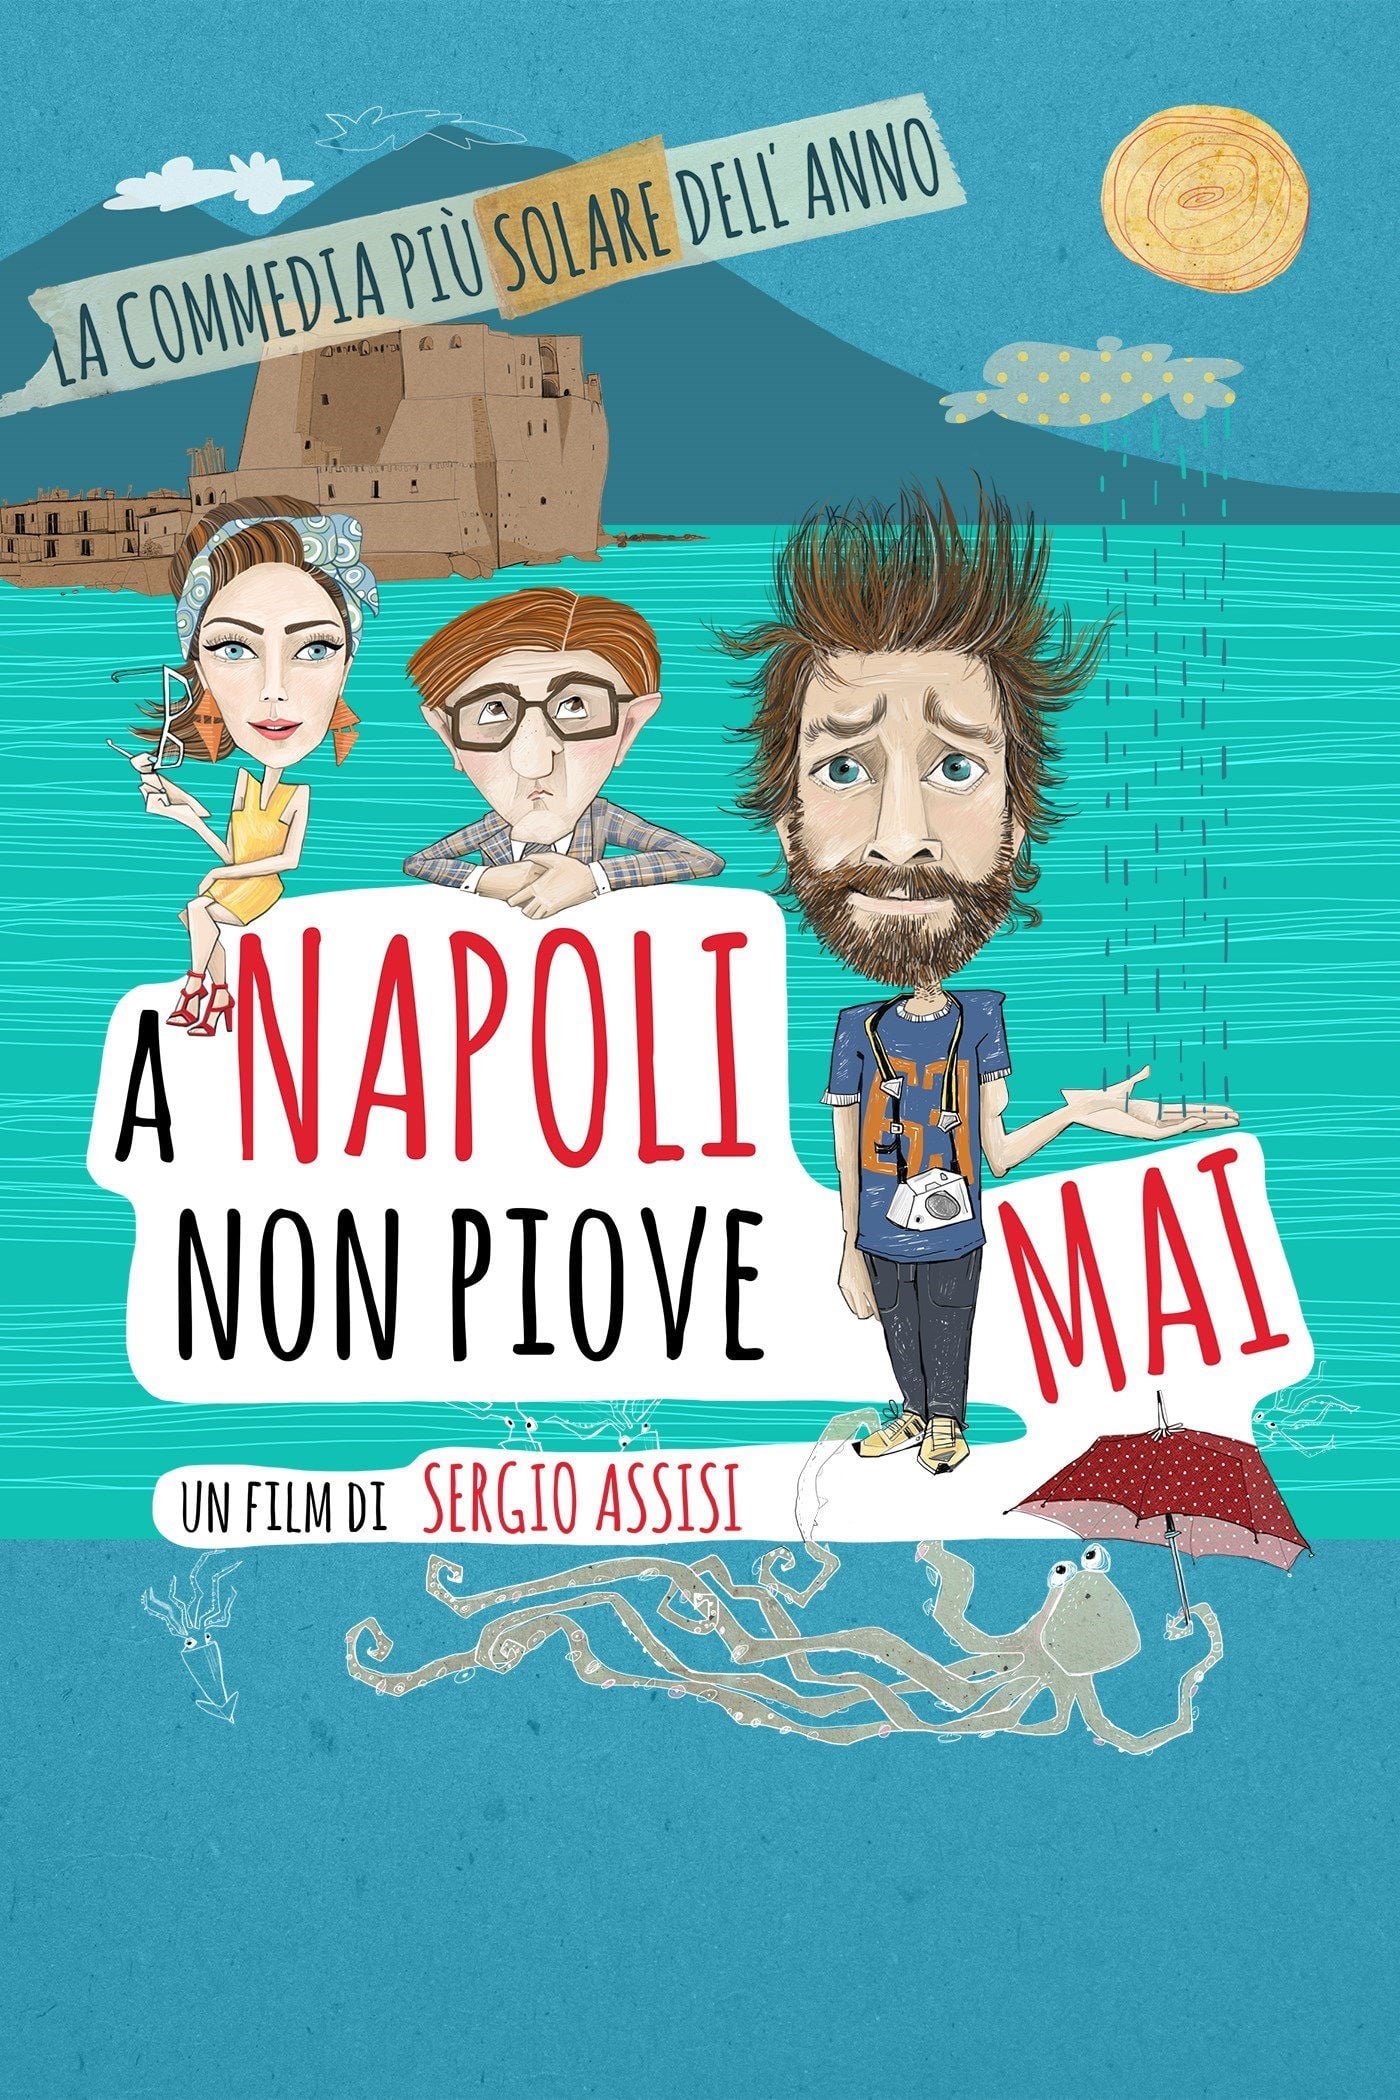 A Napoli non piove mai (2015)